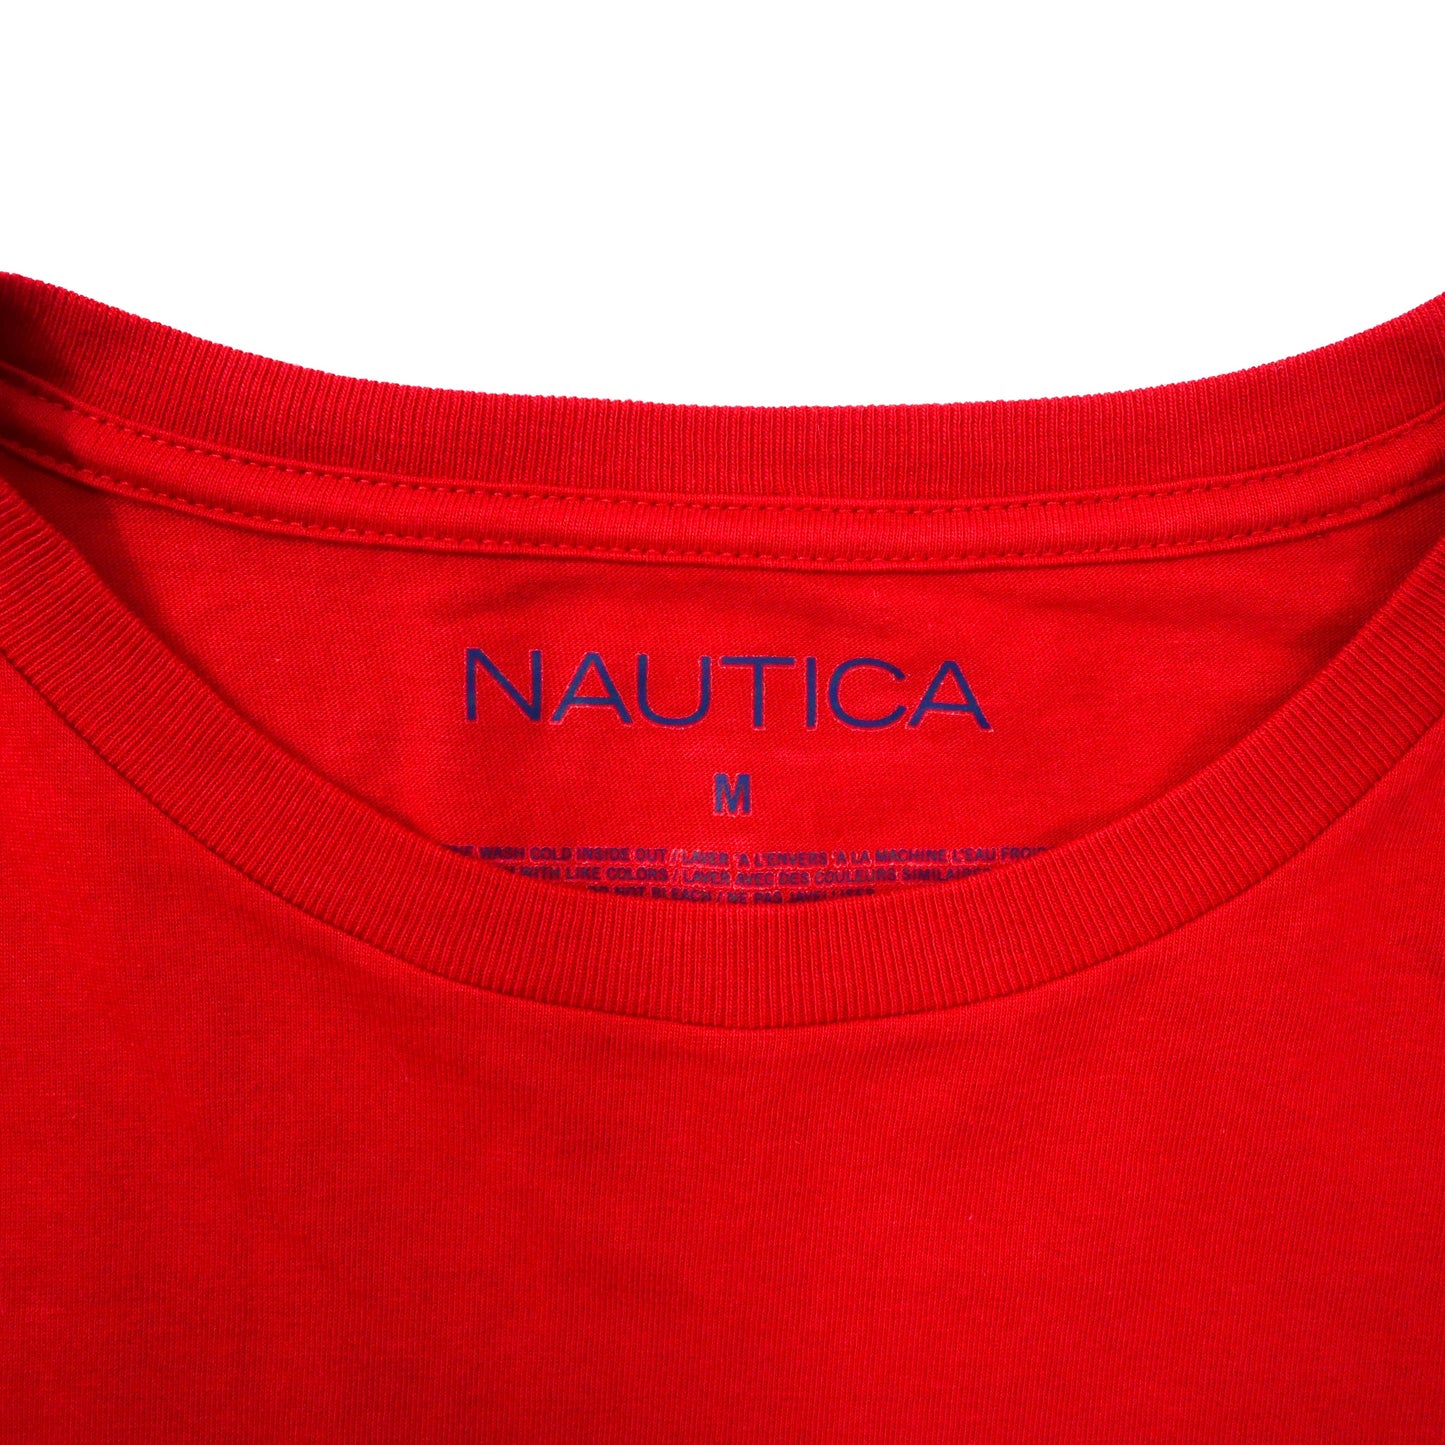 NAUTICA ワンポイントロゴTシャツ M レッド コットン